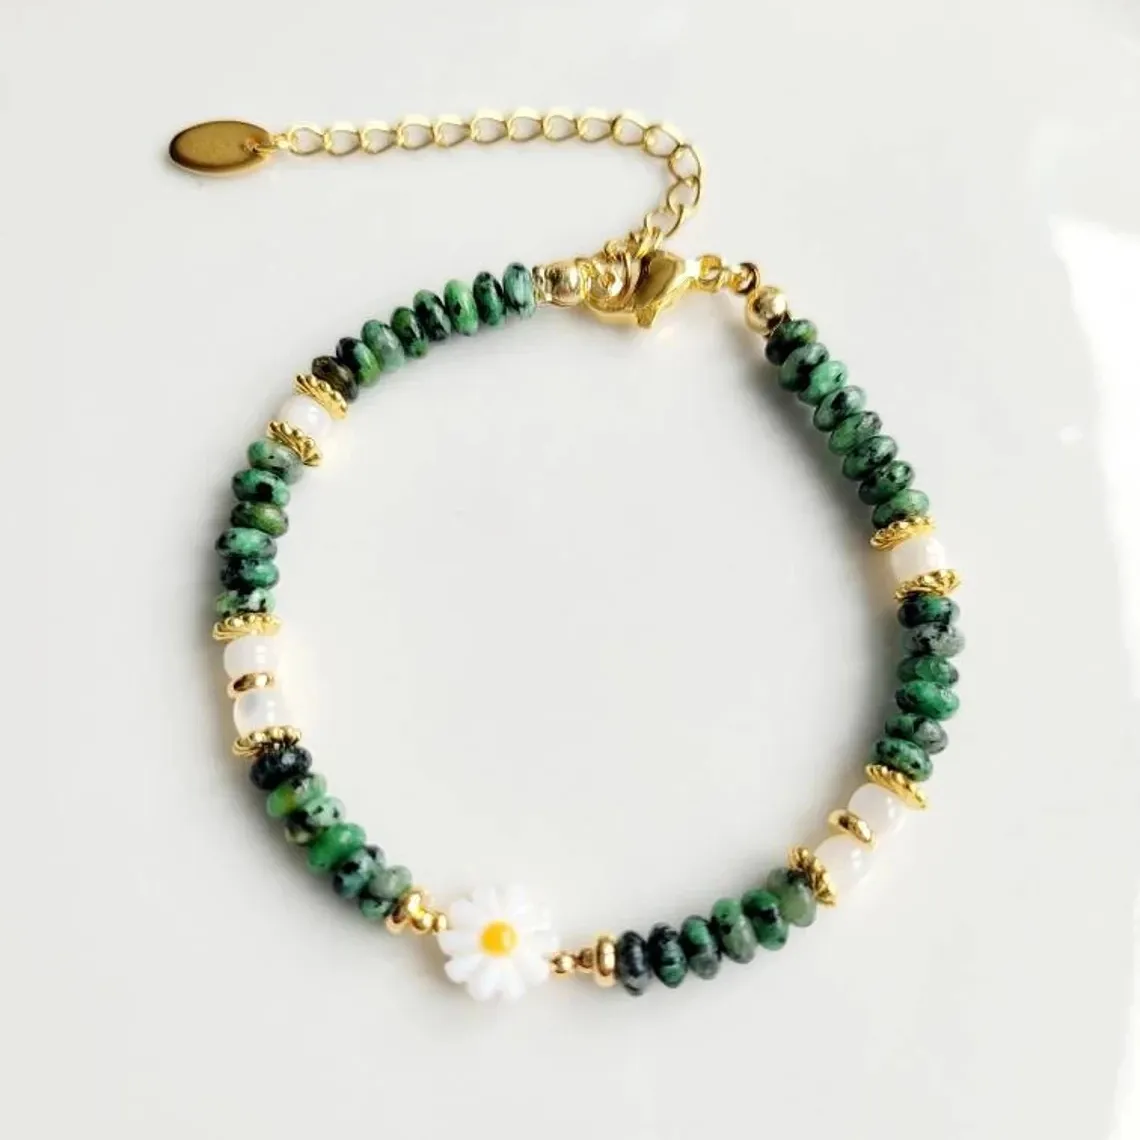 Beliebte afrikanische Türkis Naturstein Armband Mode Gänseblümchen böhmischen Chic Geschenk für Sie